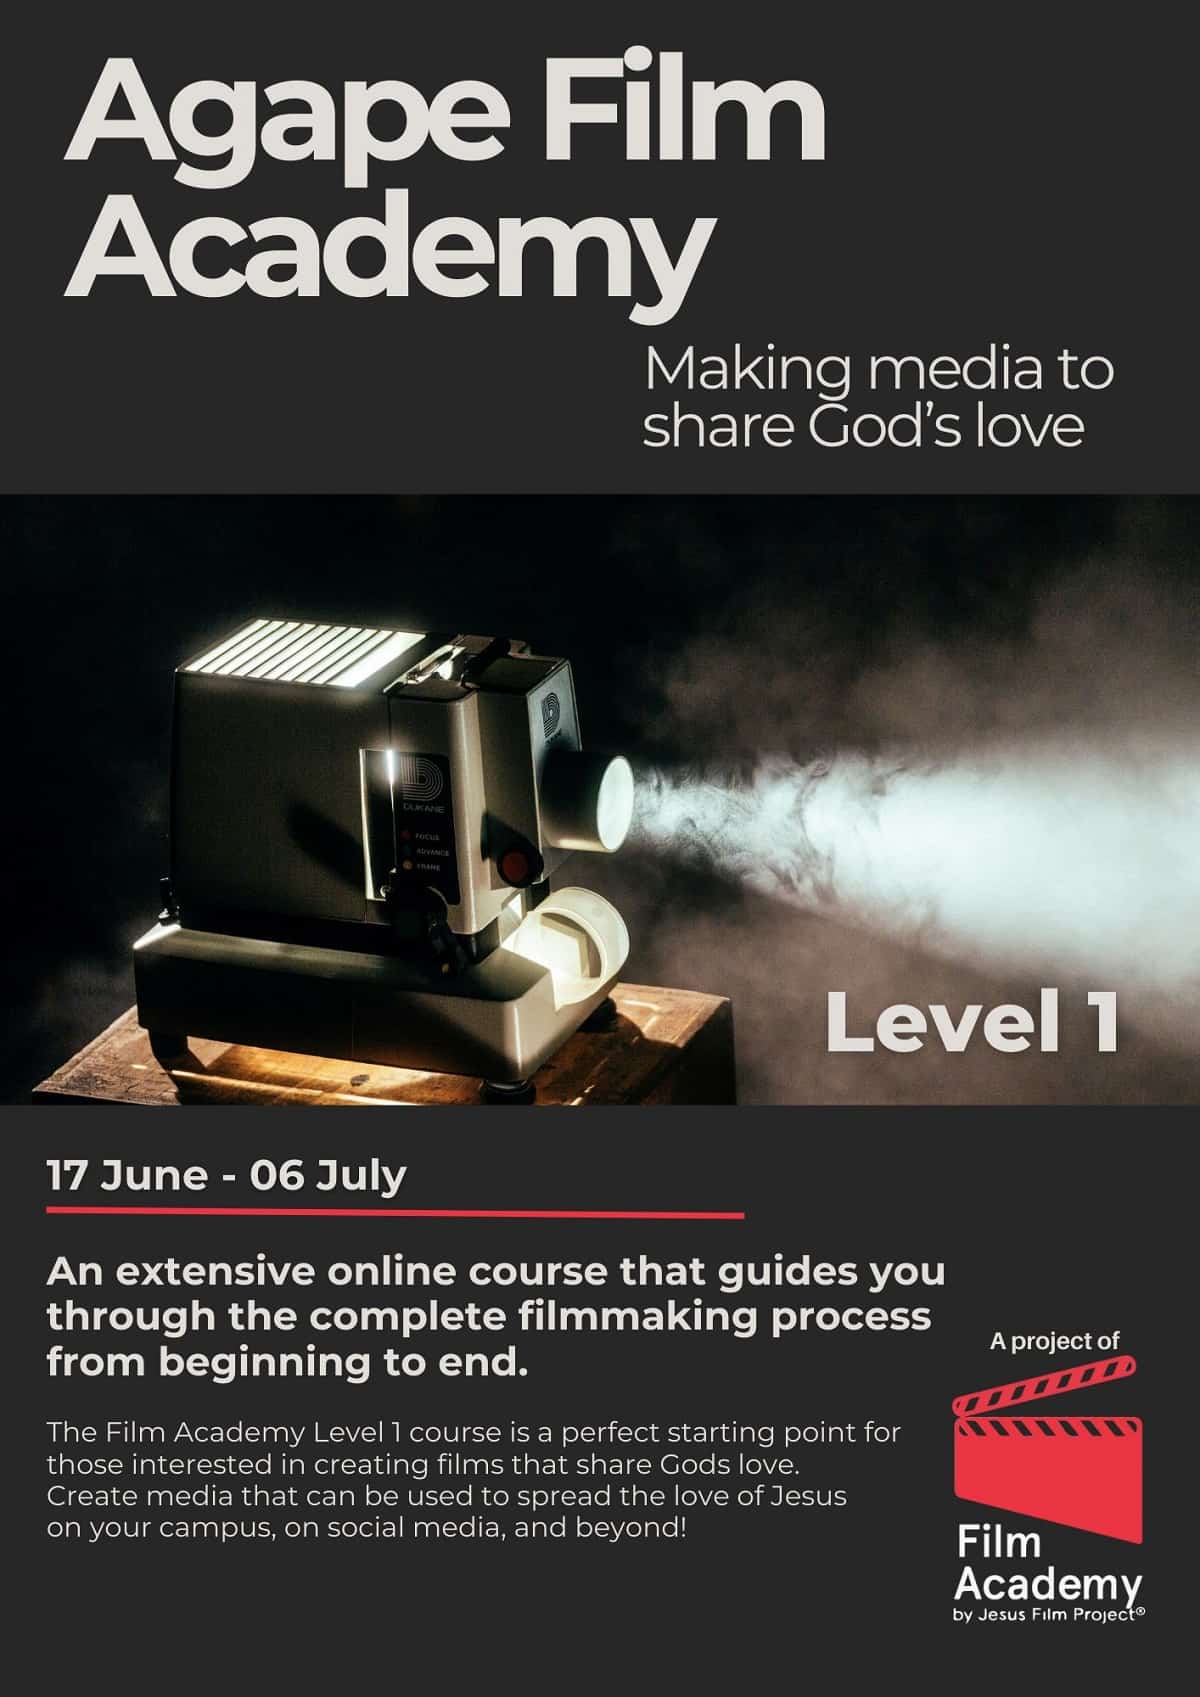 ¿Quieres aprender a hacer vídeos y cortos para evangelizar? Ahora cuentas con Agape Film Academy